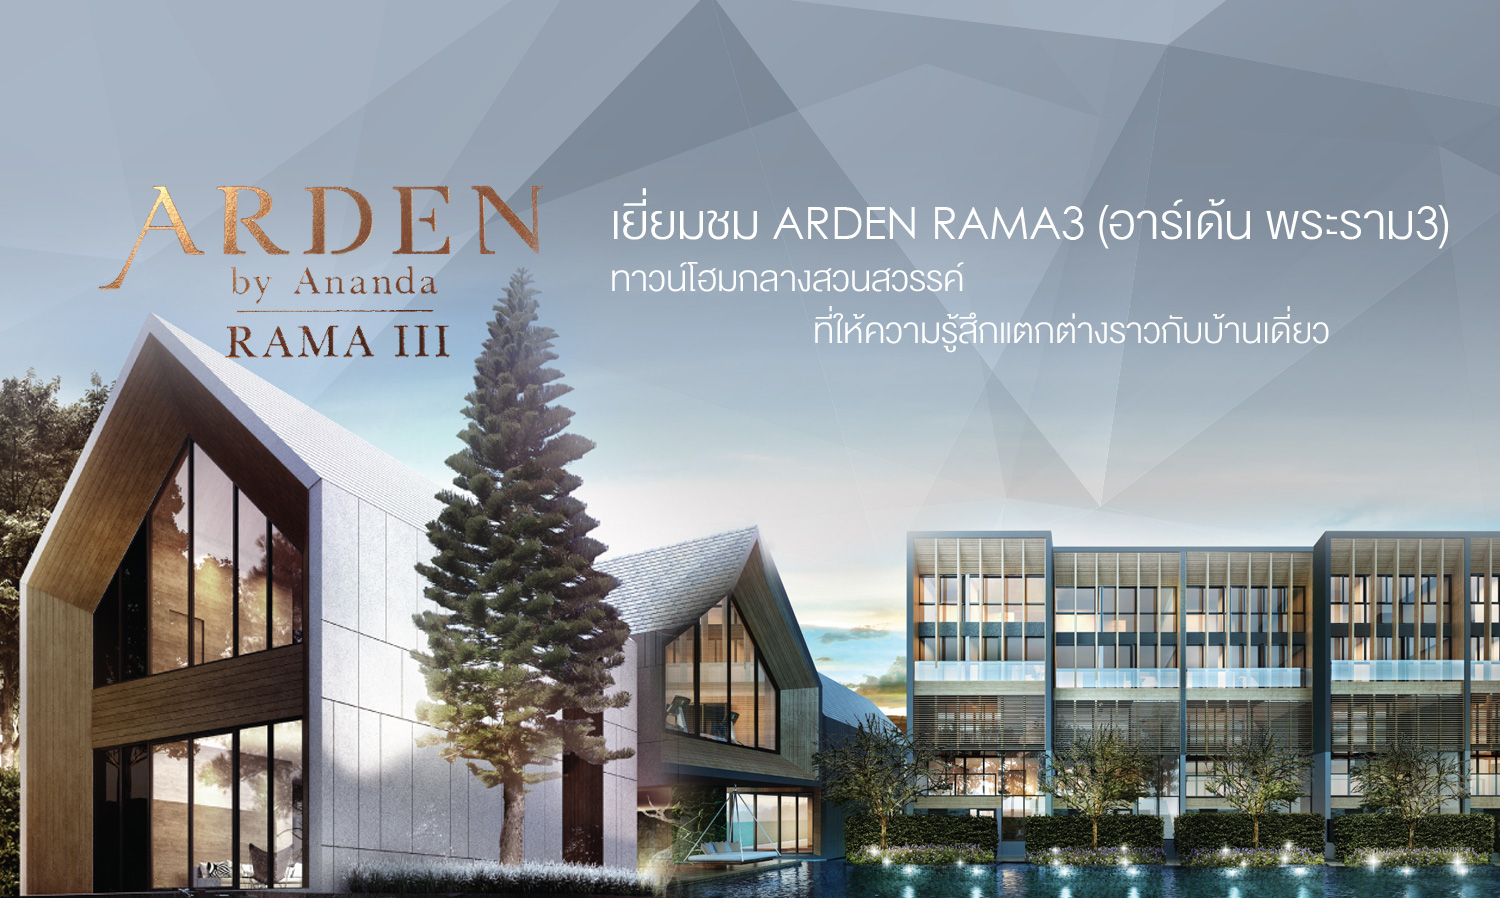 เยี่ยมชม Arden Rama 3 (อาร์เด้น พระราม 3) ทาวน์โฮมกลางสวนสวรรค์  ที่ให้ความรู้สึกแตกต่างราวกับบ้านเดี่ยว